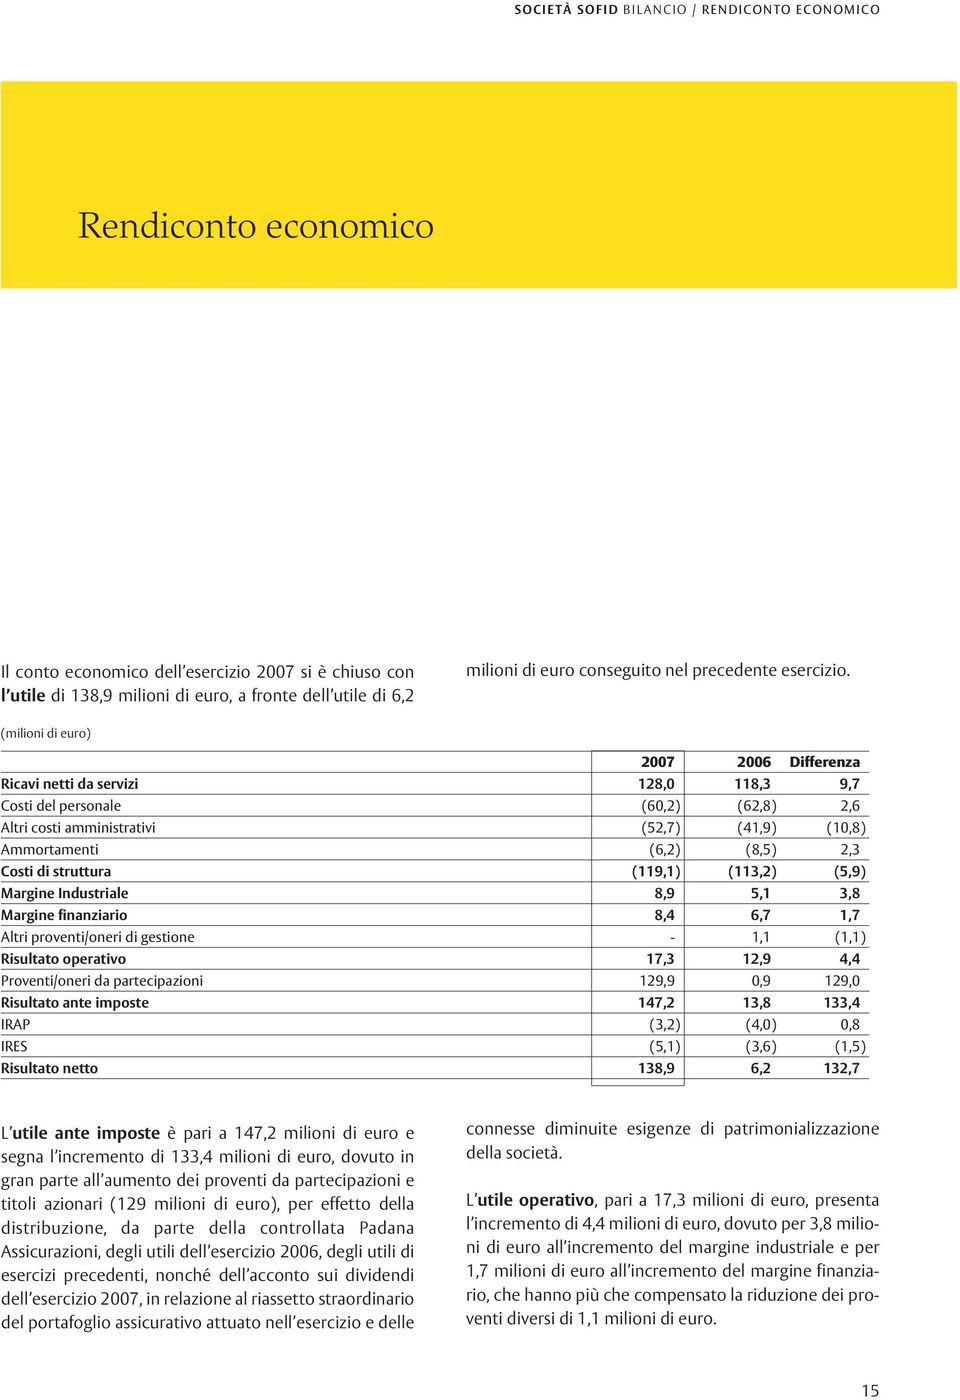 (milioni di euro) 2007 2006 Differenza Ricavi netti da servizi 128,0 118,3 9,7 Costi del personale (60,2) (62,8) 2,6 Altri costi amministrativi (52,7) (41,9) (10,8) Ammortamenti (6,2) (8,5) 2,3 Costi